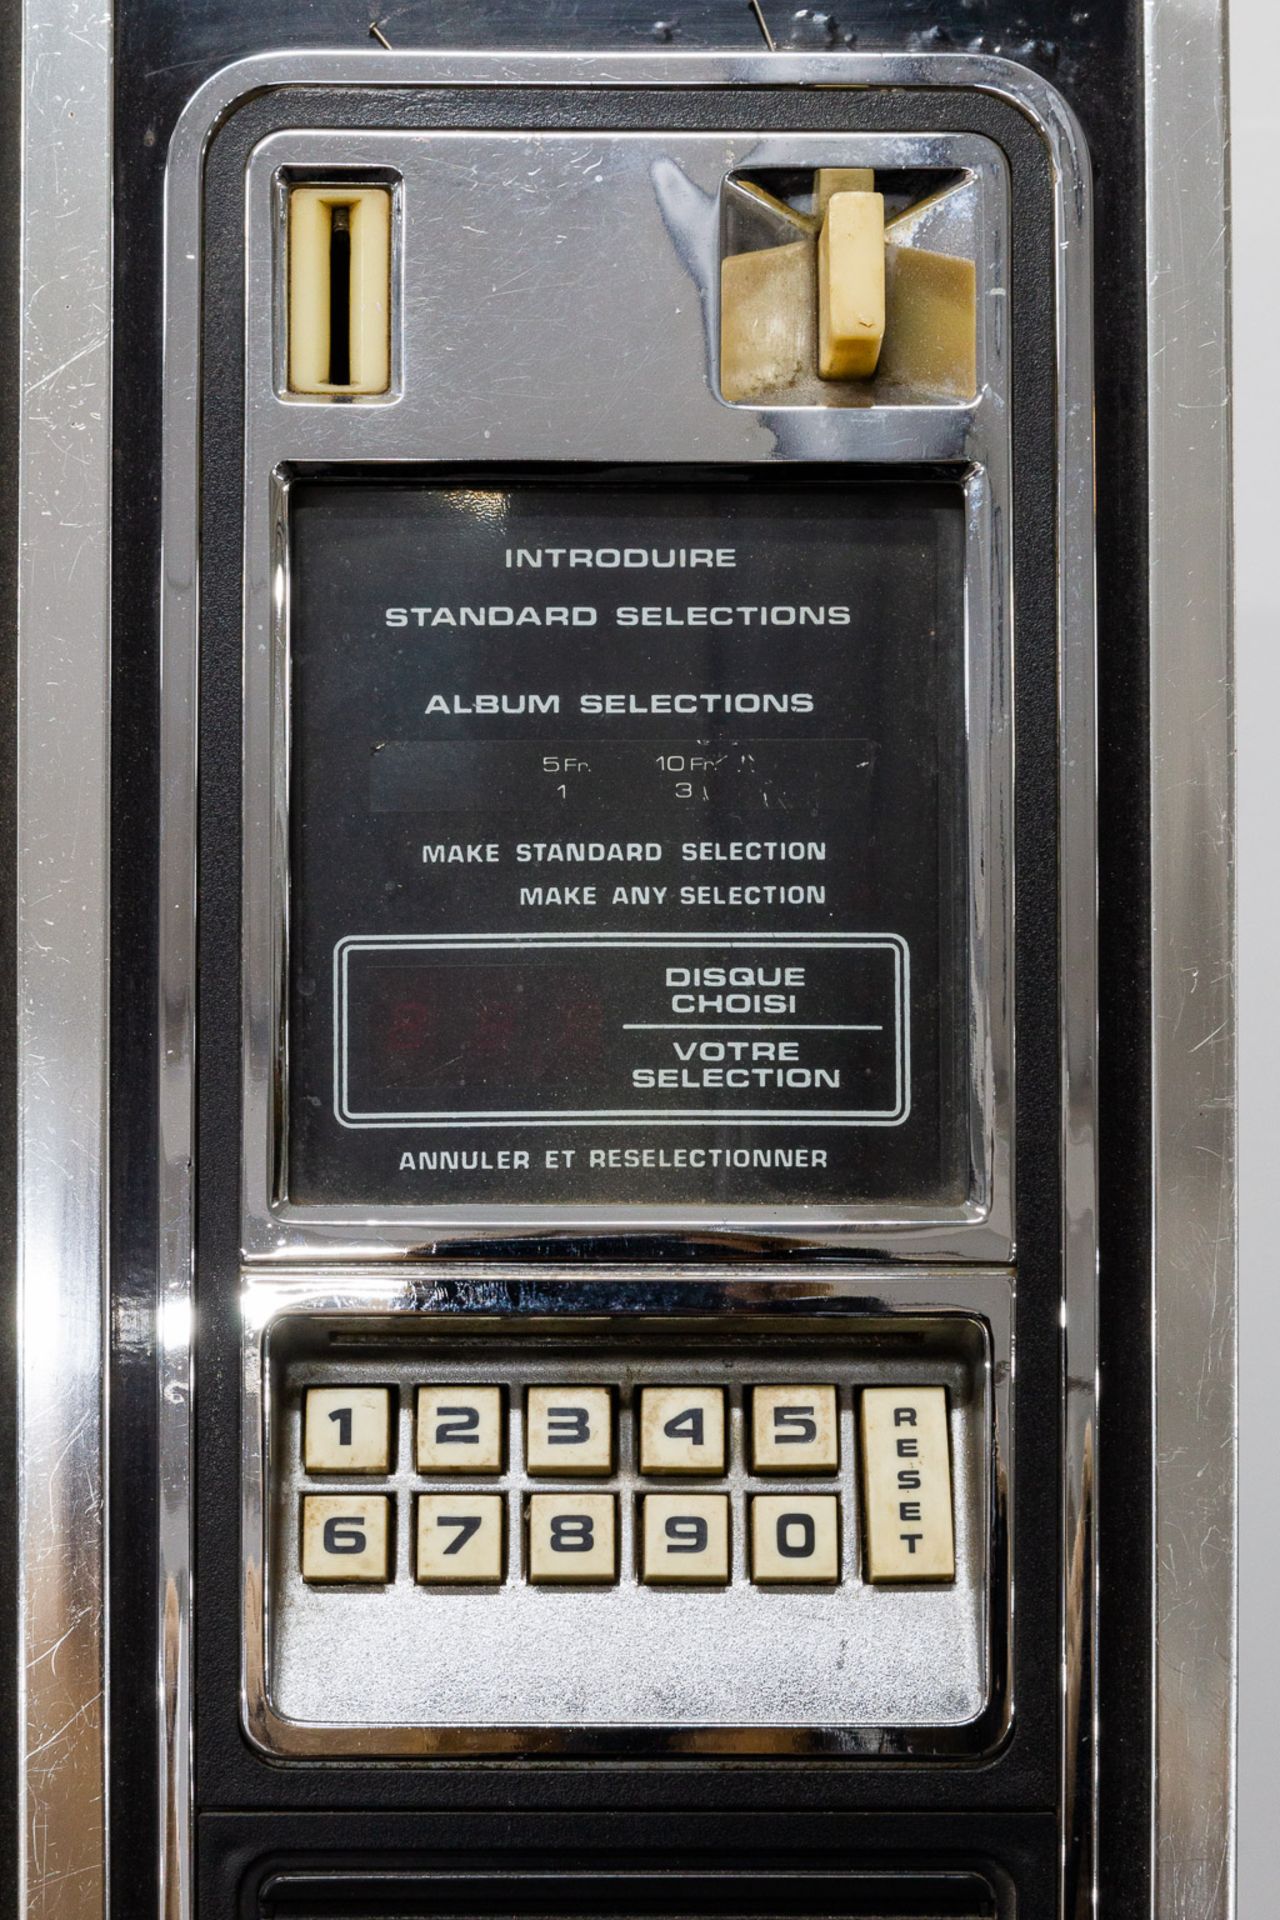 An AMI Black magic Jukebox, 1978, Model R82 - Image 21 of 23